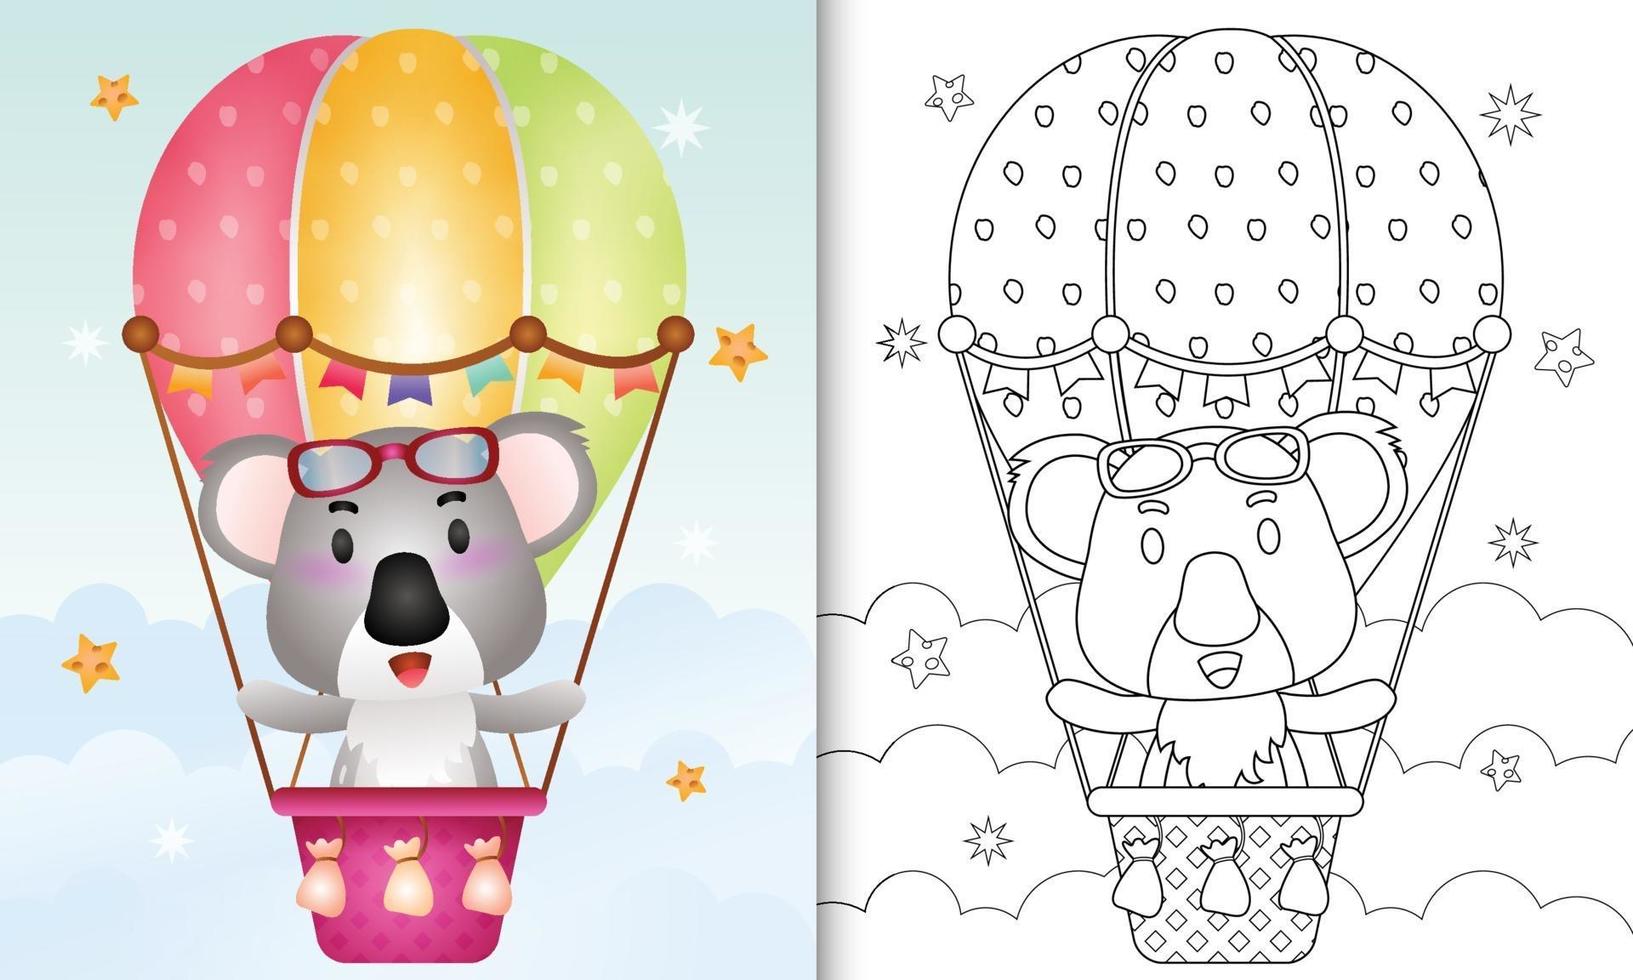 livro de colorir para crianças com um coala fofo em um balão de ar quente vetor